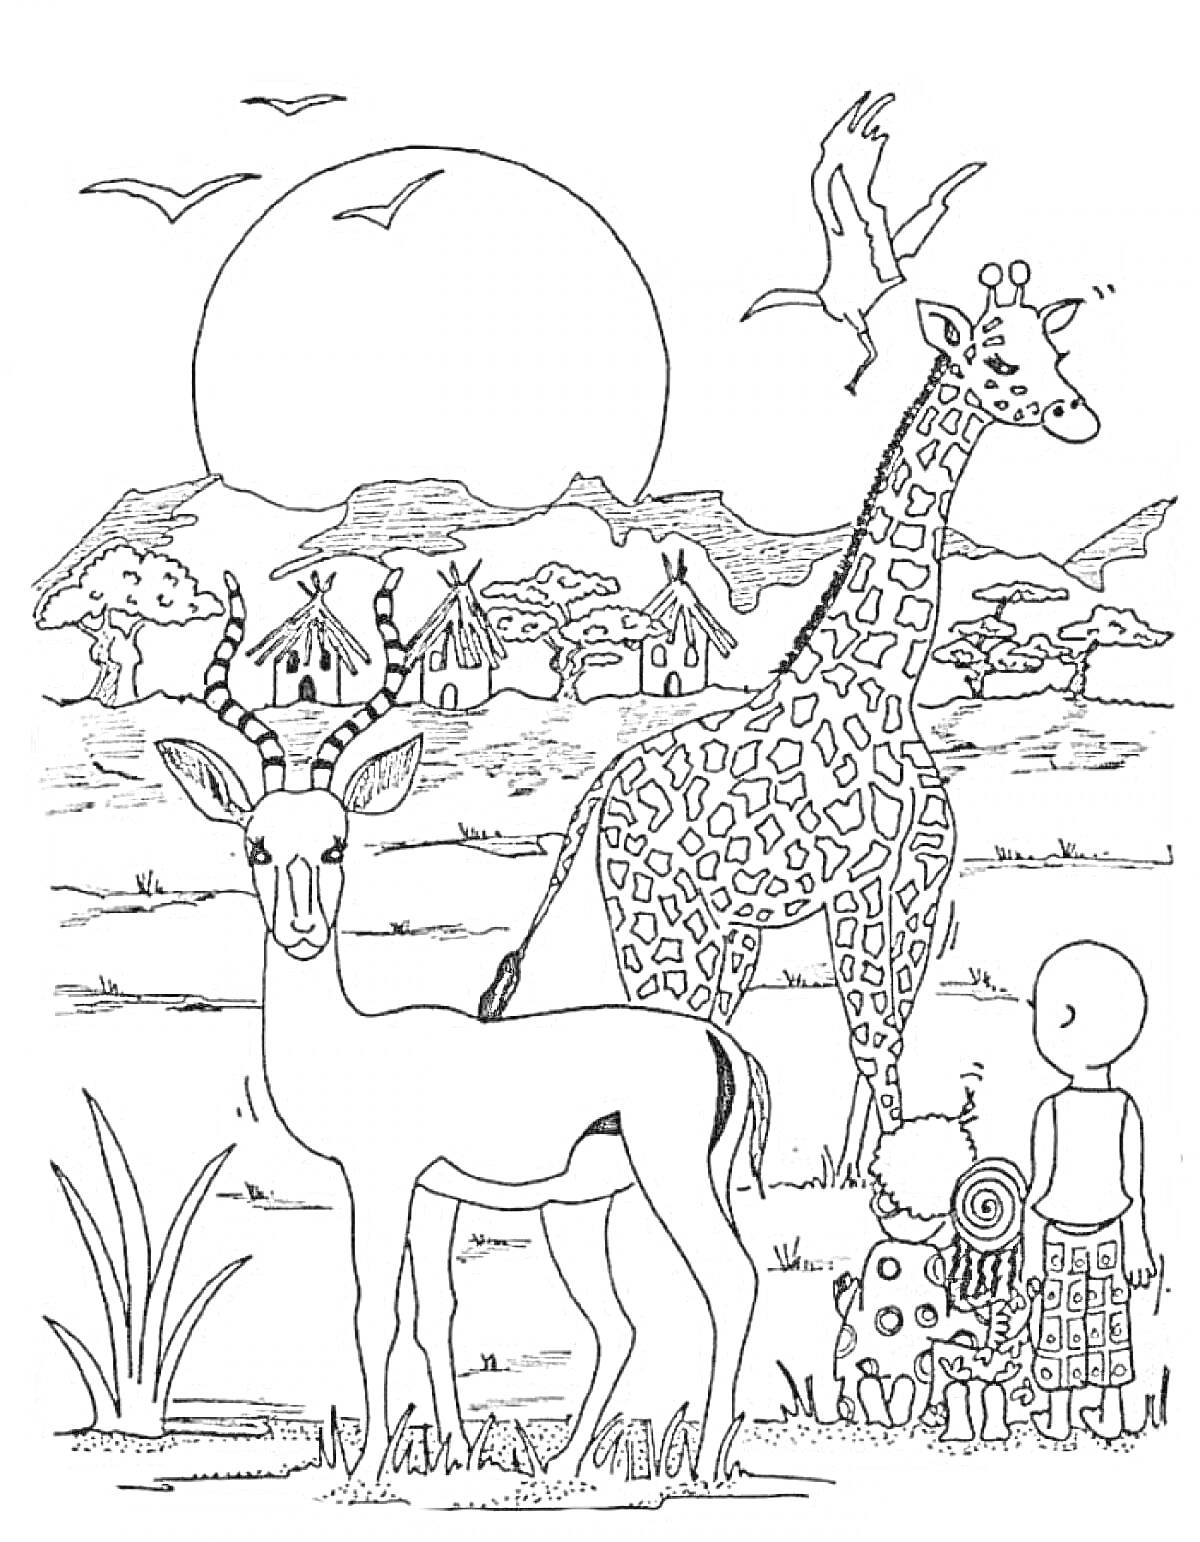 Раскраска Жираф и антилопа на африканском ландшафте с жителями деревни на фоне заката